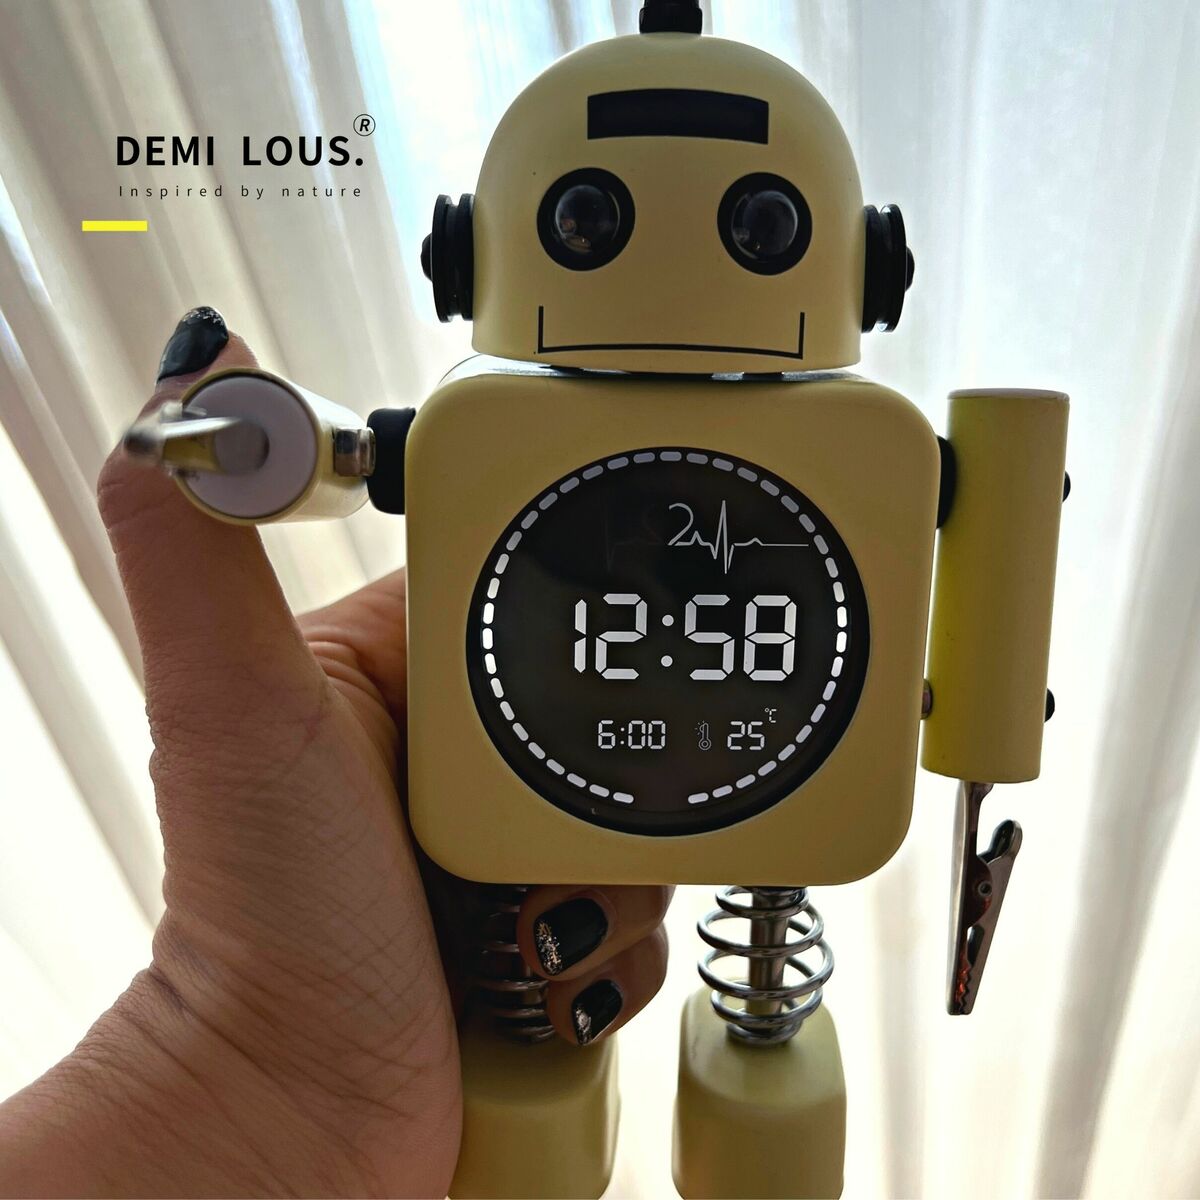 ロボット型 目覚まし 時計 - インテリア時計